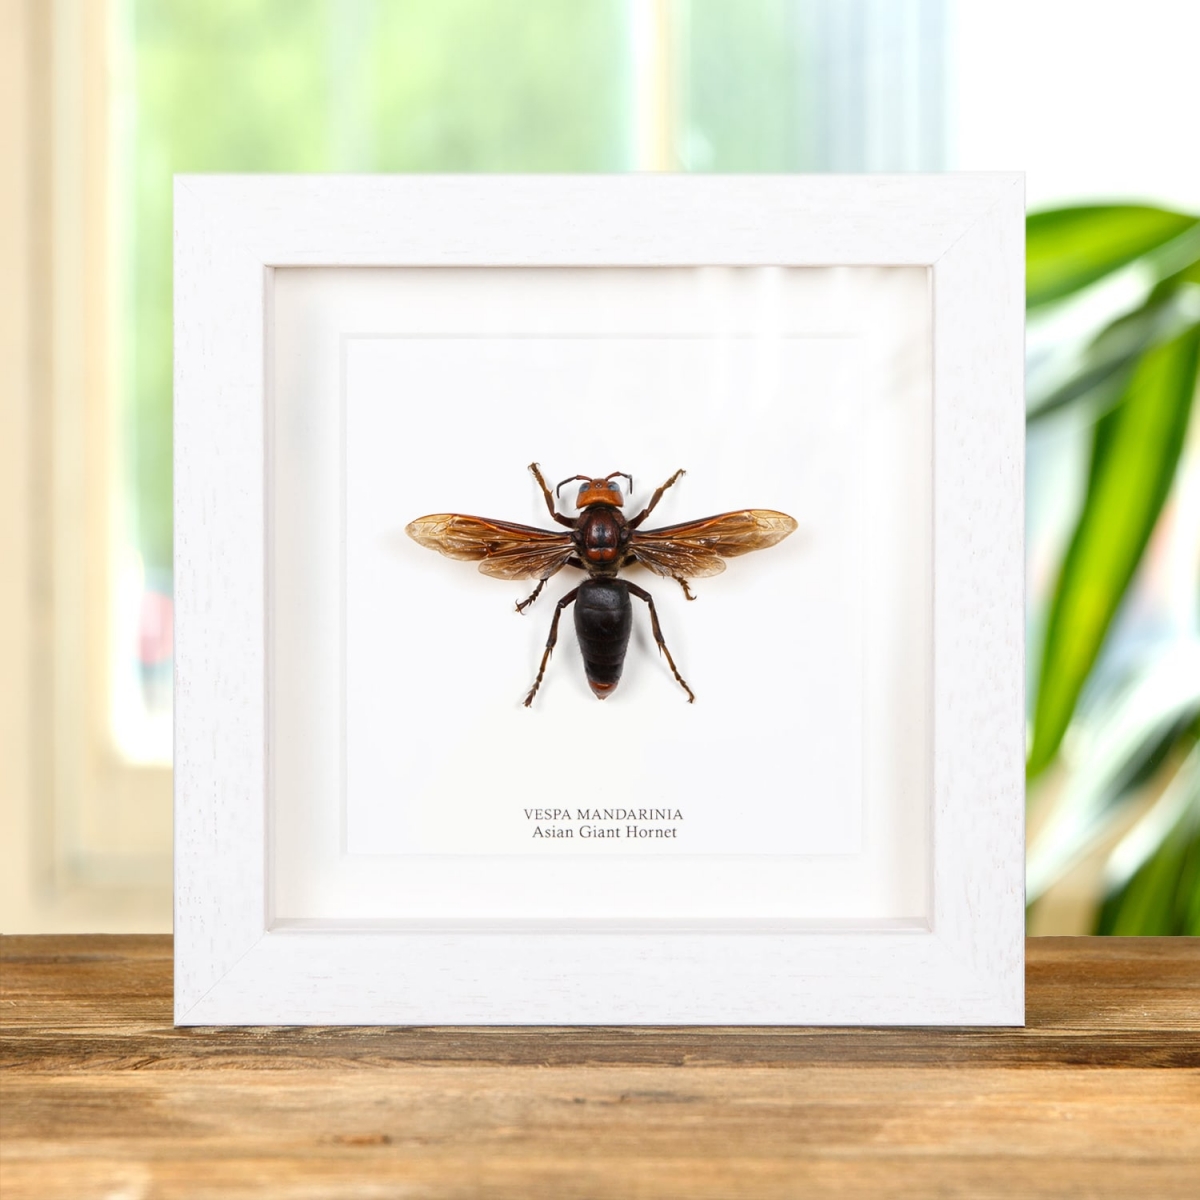 Asian Giant Hornet in Box Frame (Vespa mandarinia)